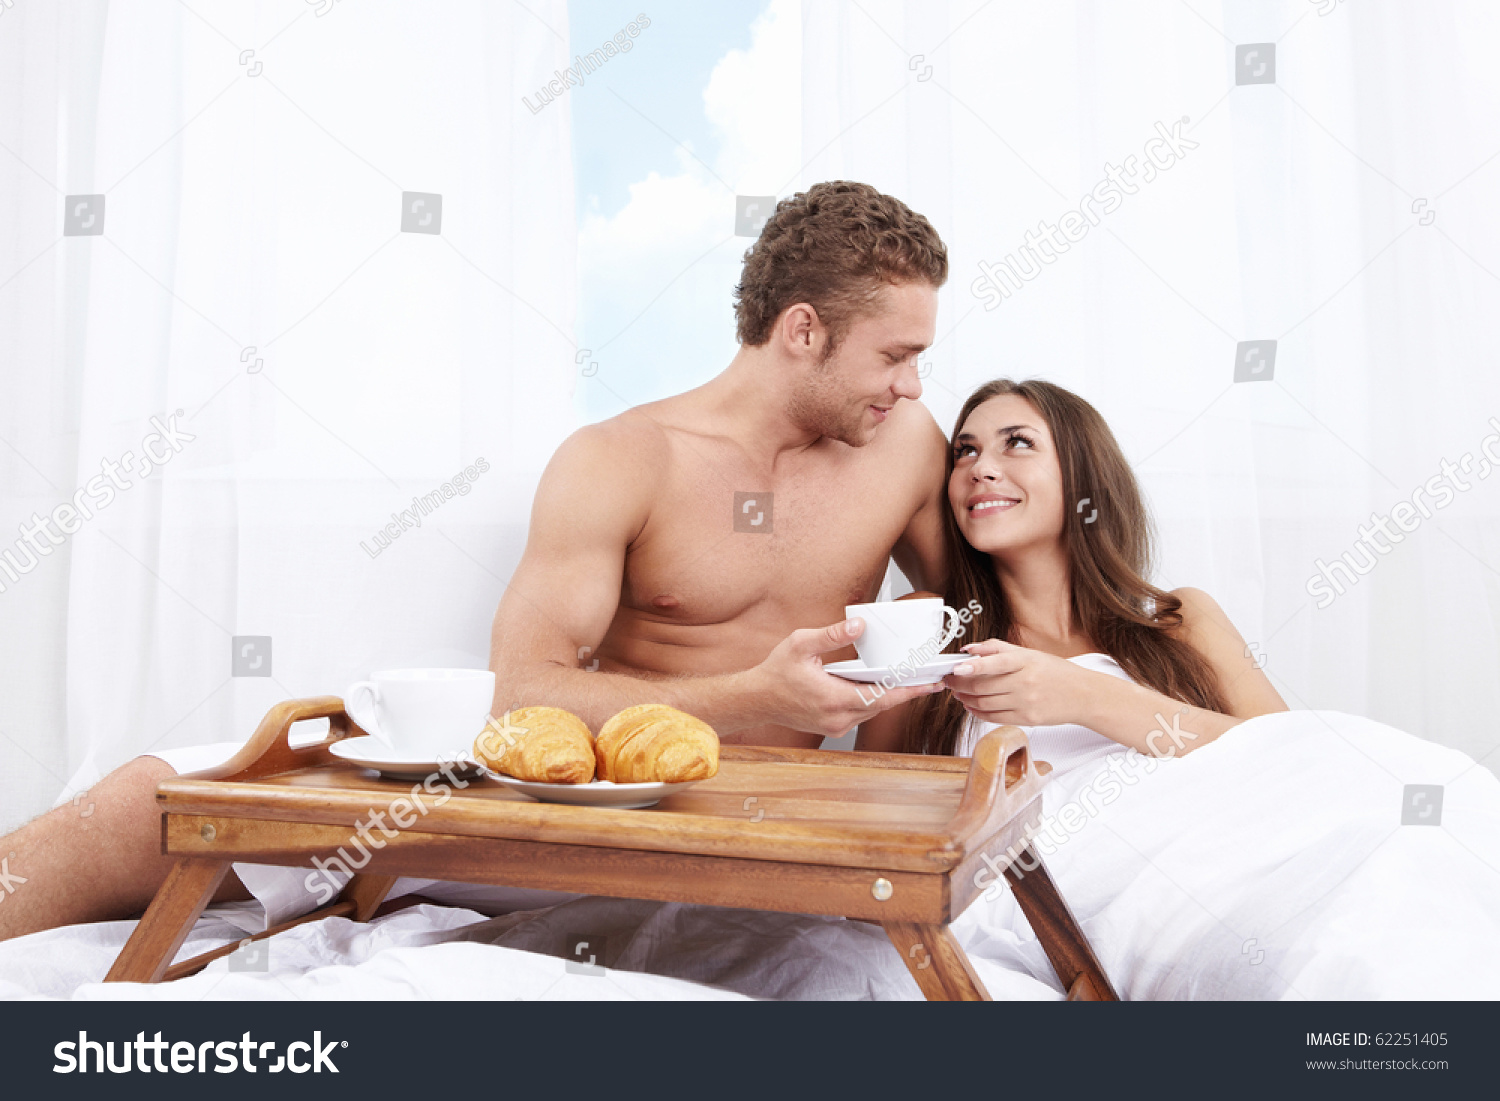 Утренний секс миниатюрной Меган со своим мужчиной